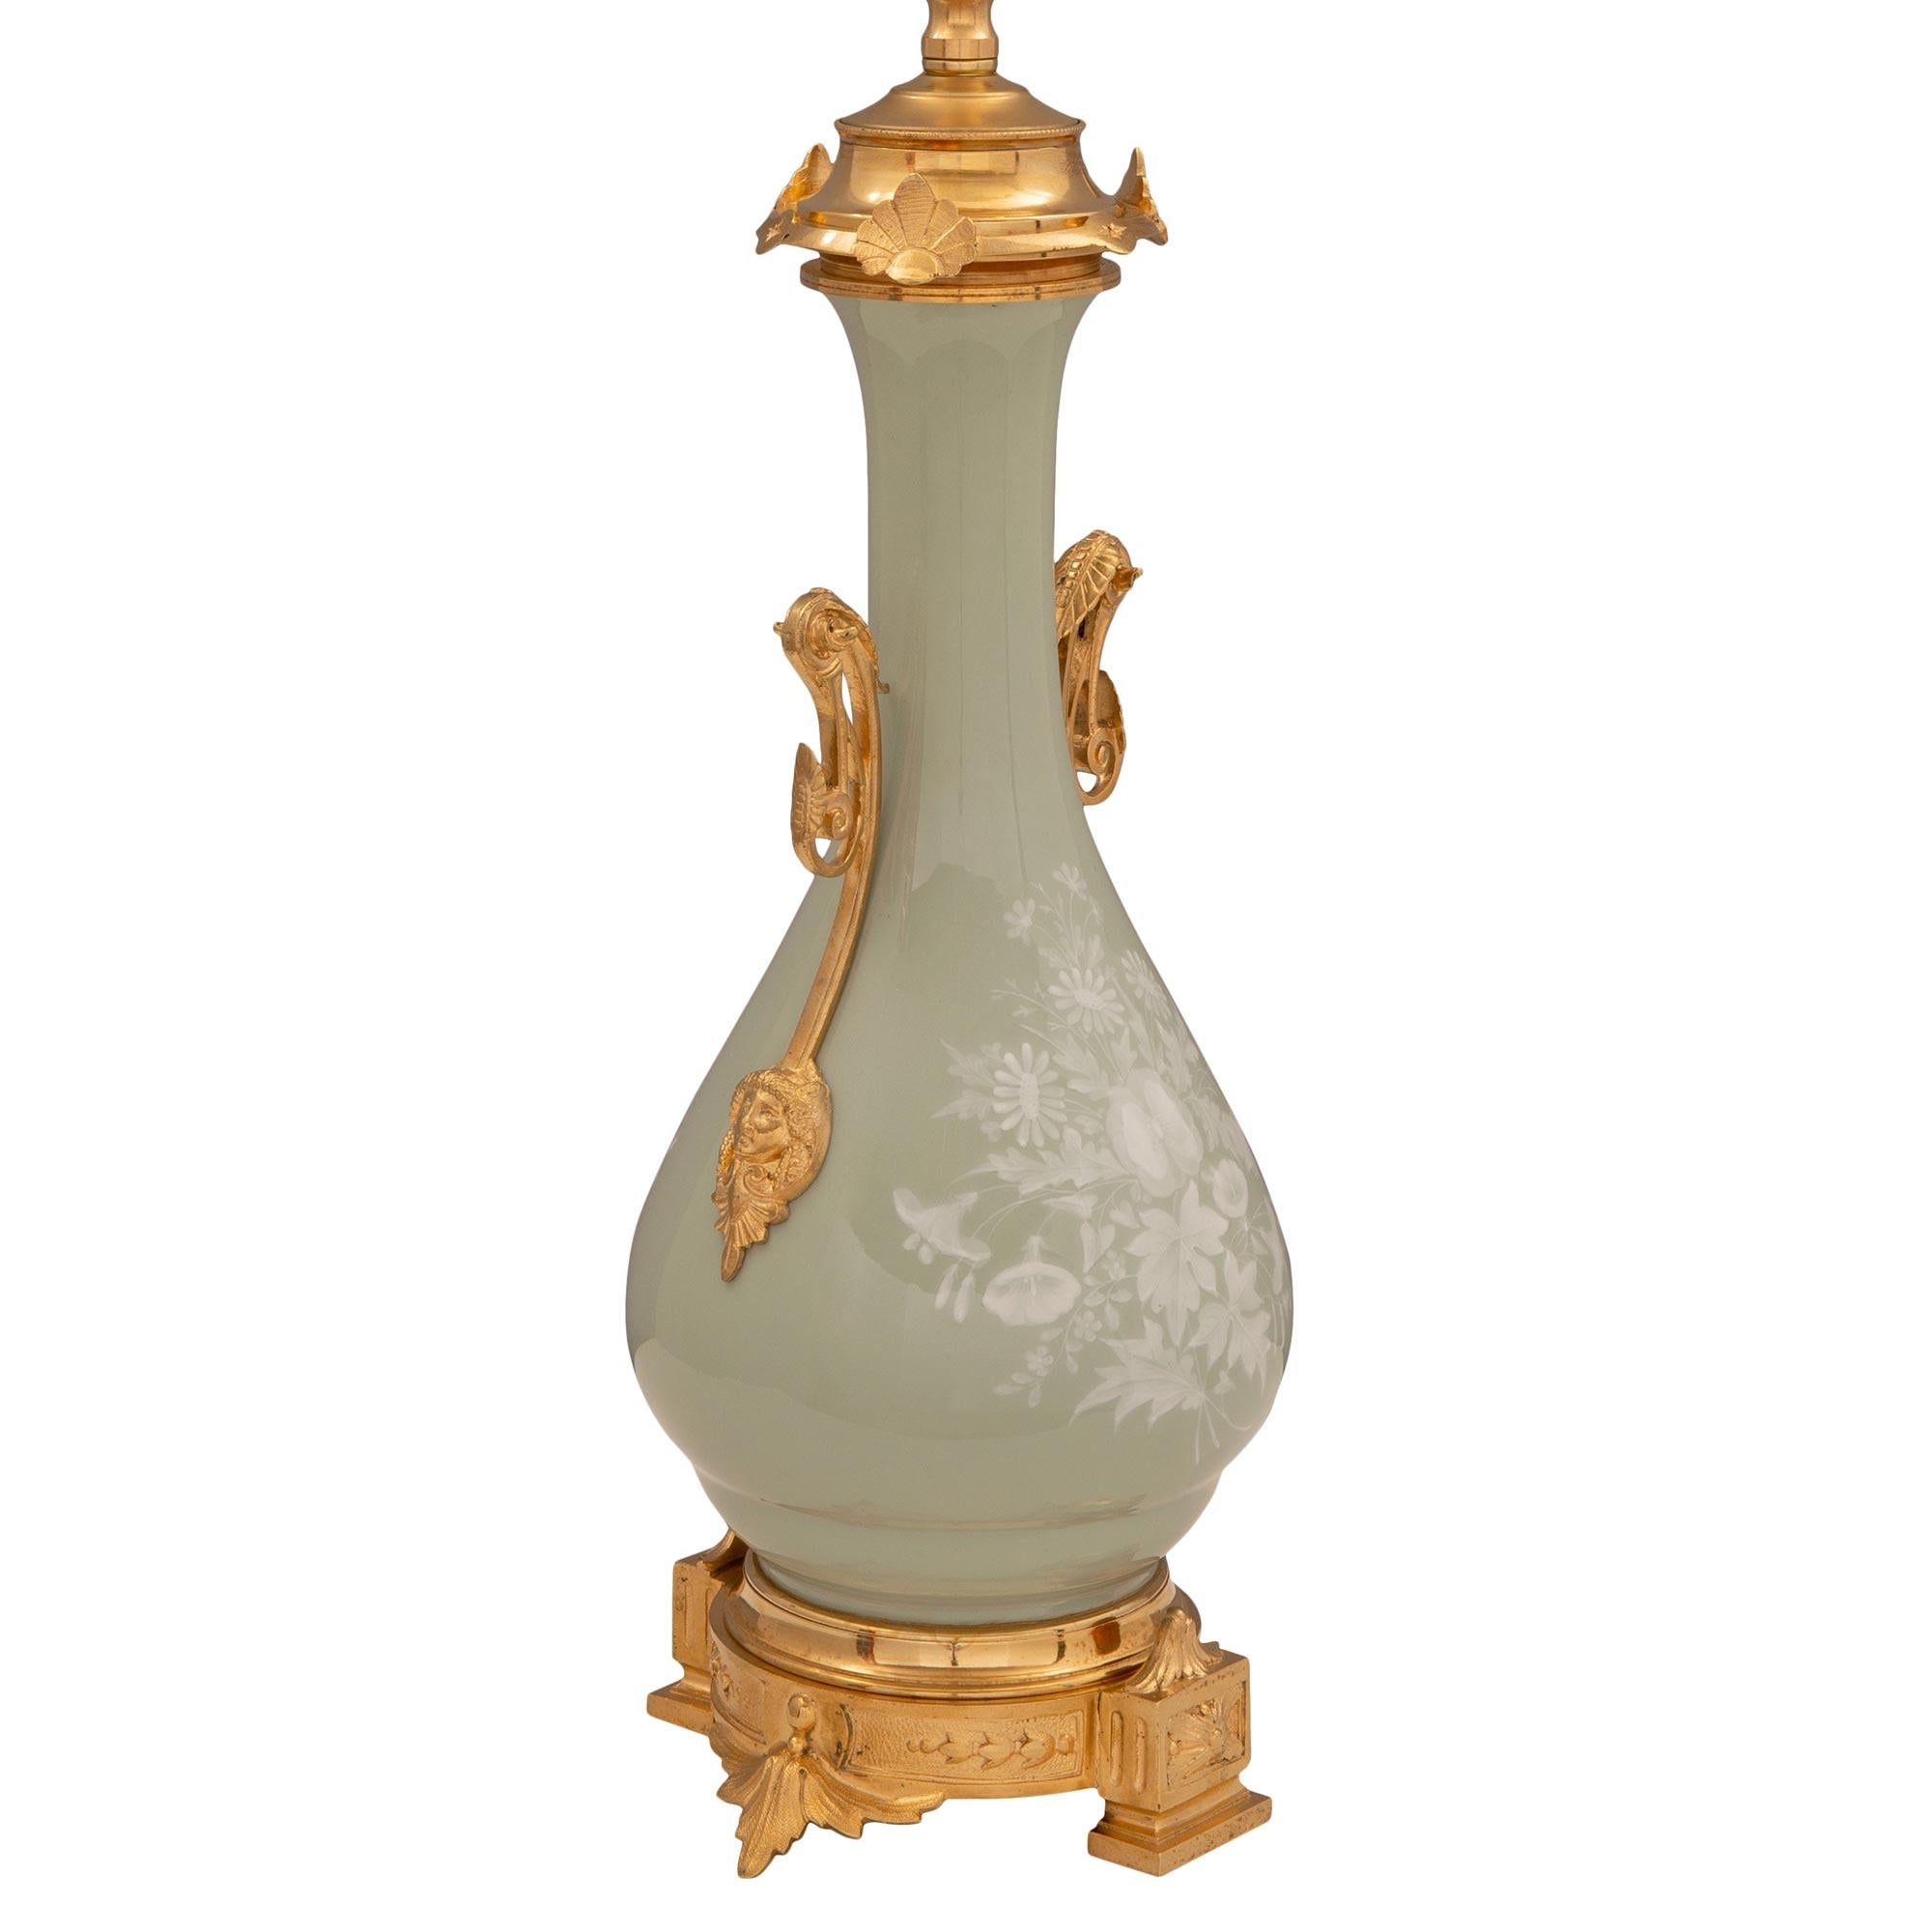 Une belle et extrêmement décorative lampe française du 19ème siècle, de style Renaissance, en porcelaine de couleur céladon et en bronze doré. La lampe est surélevée par une belle base circulaire en bronze doré finement détaillée, avec des pieds en